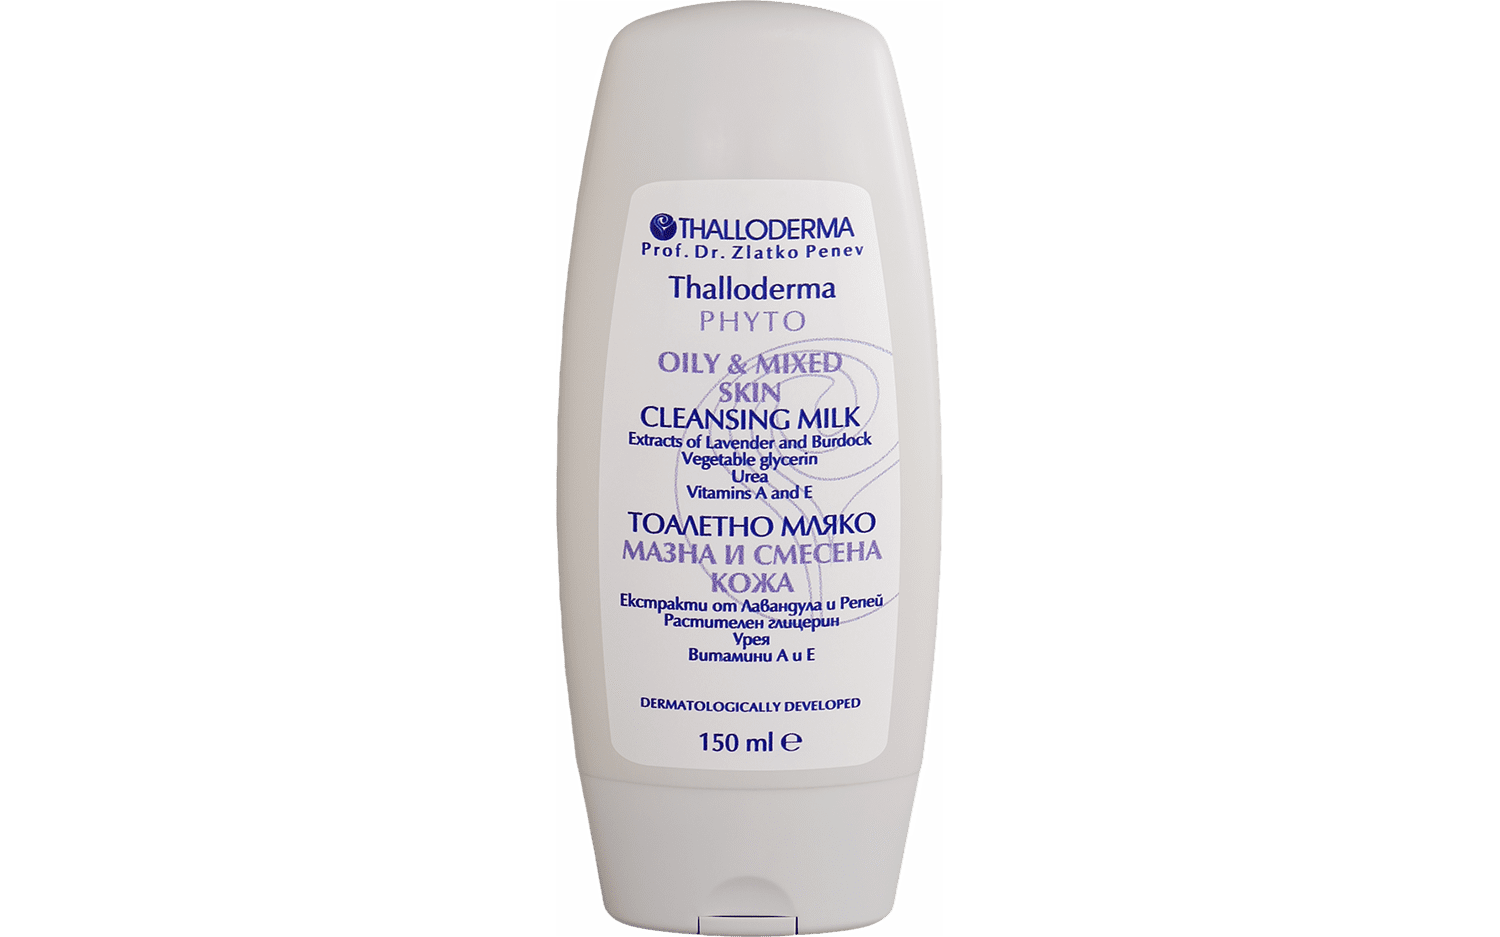 Thalloderma® Melk reiniger voor gezicht voor vette en gecombineerde huid - Lavendel- en klisextract 150ml